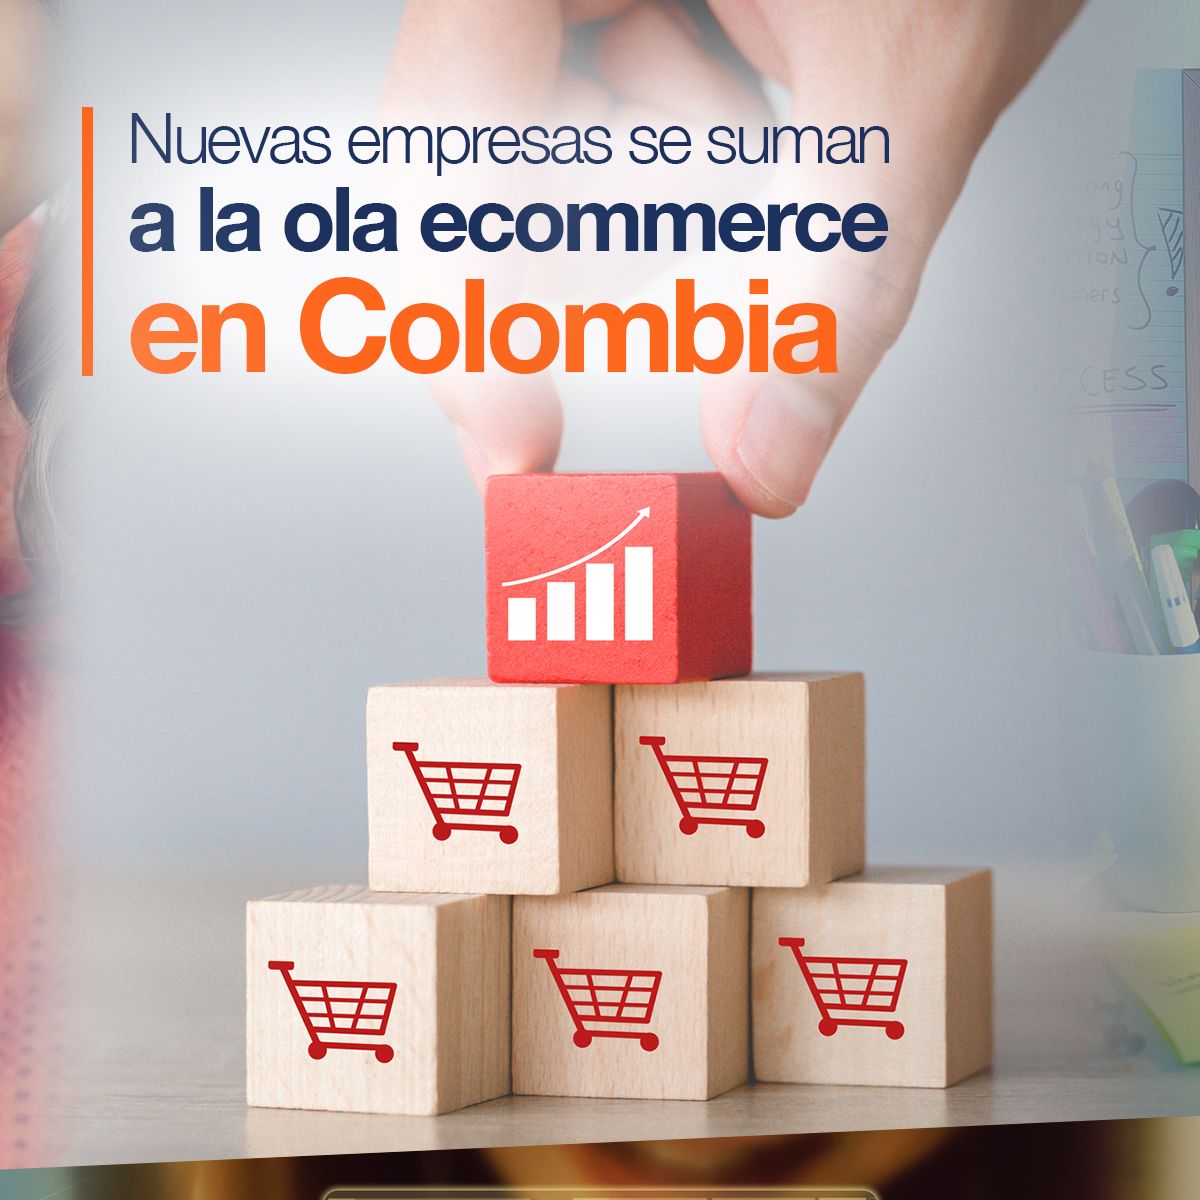 Nuevas empresas se suman a la ola ecommerce en Colombia